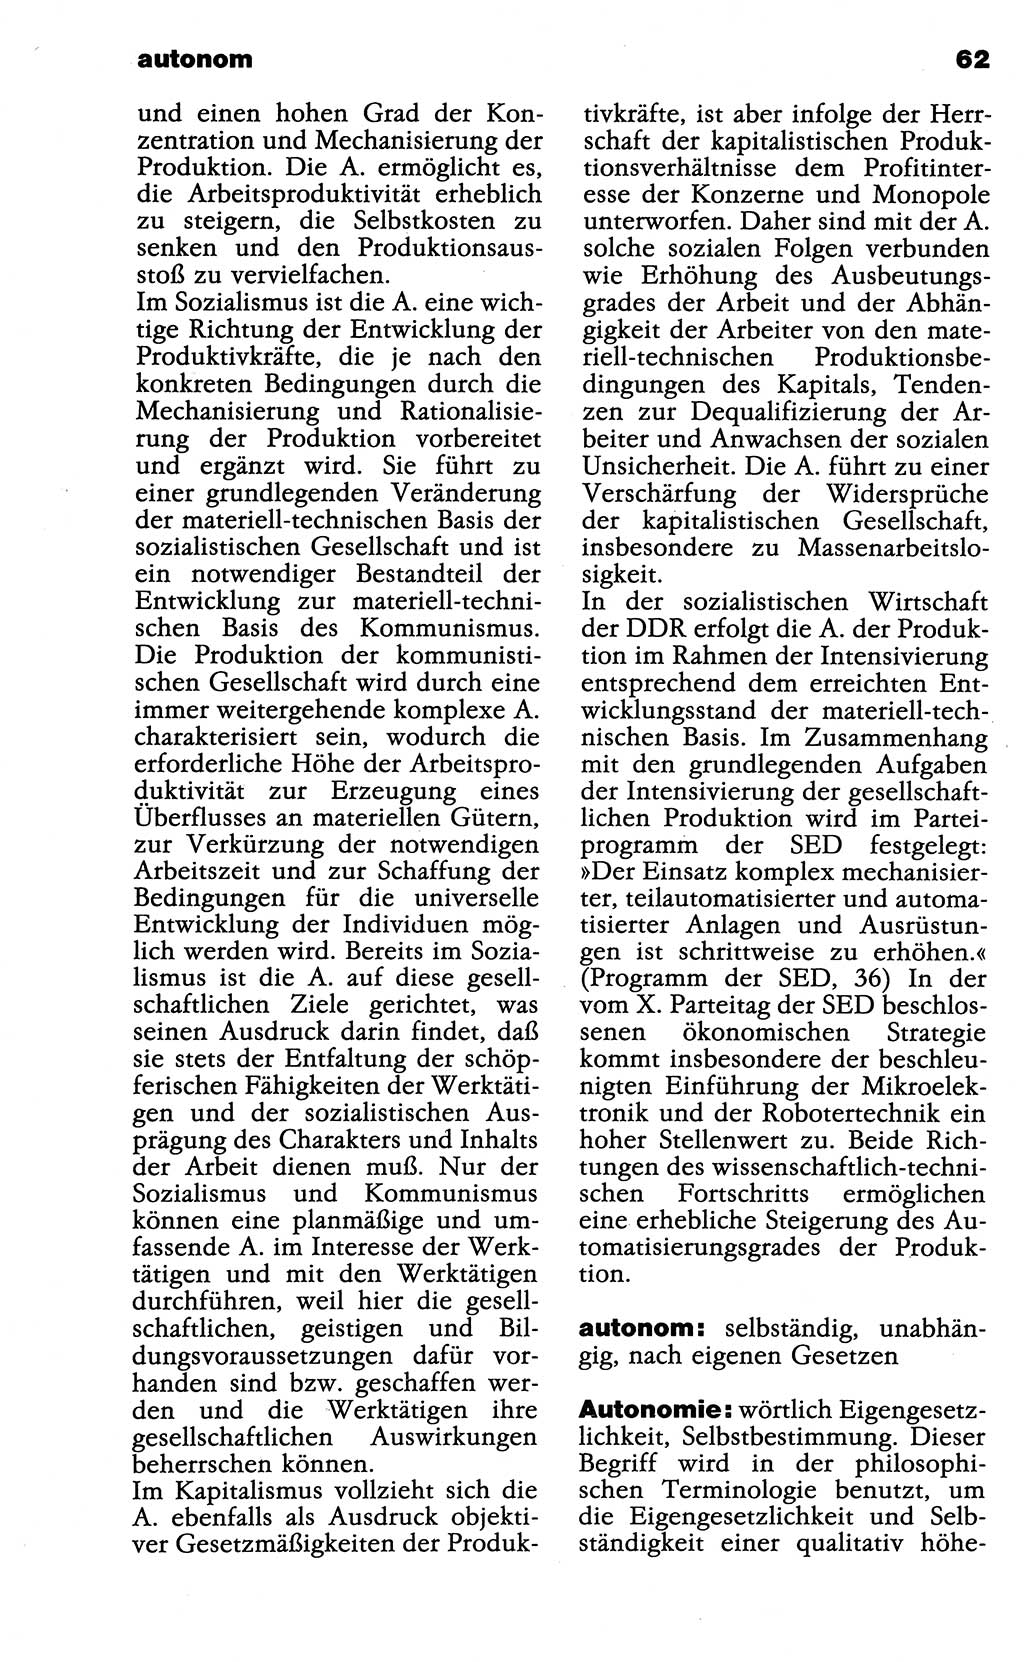 Wörterbuch der marxistisch-leninistischen Philosophie [Deutsche Demokratische Republik (DDR)] 1985, Seite 62 (Wb. ML Phil. DDR 1985, S. 62)